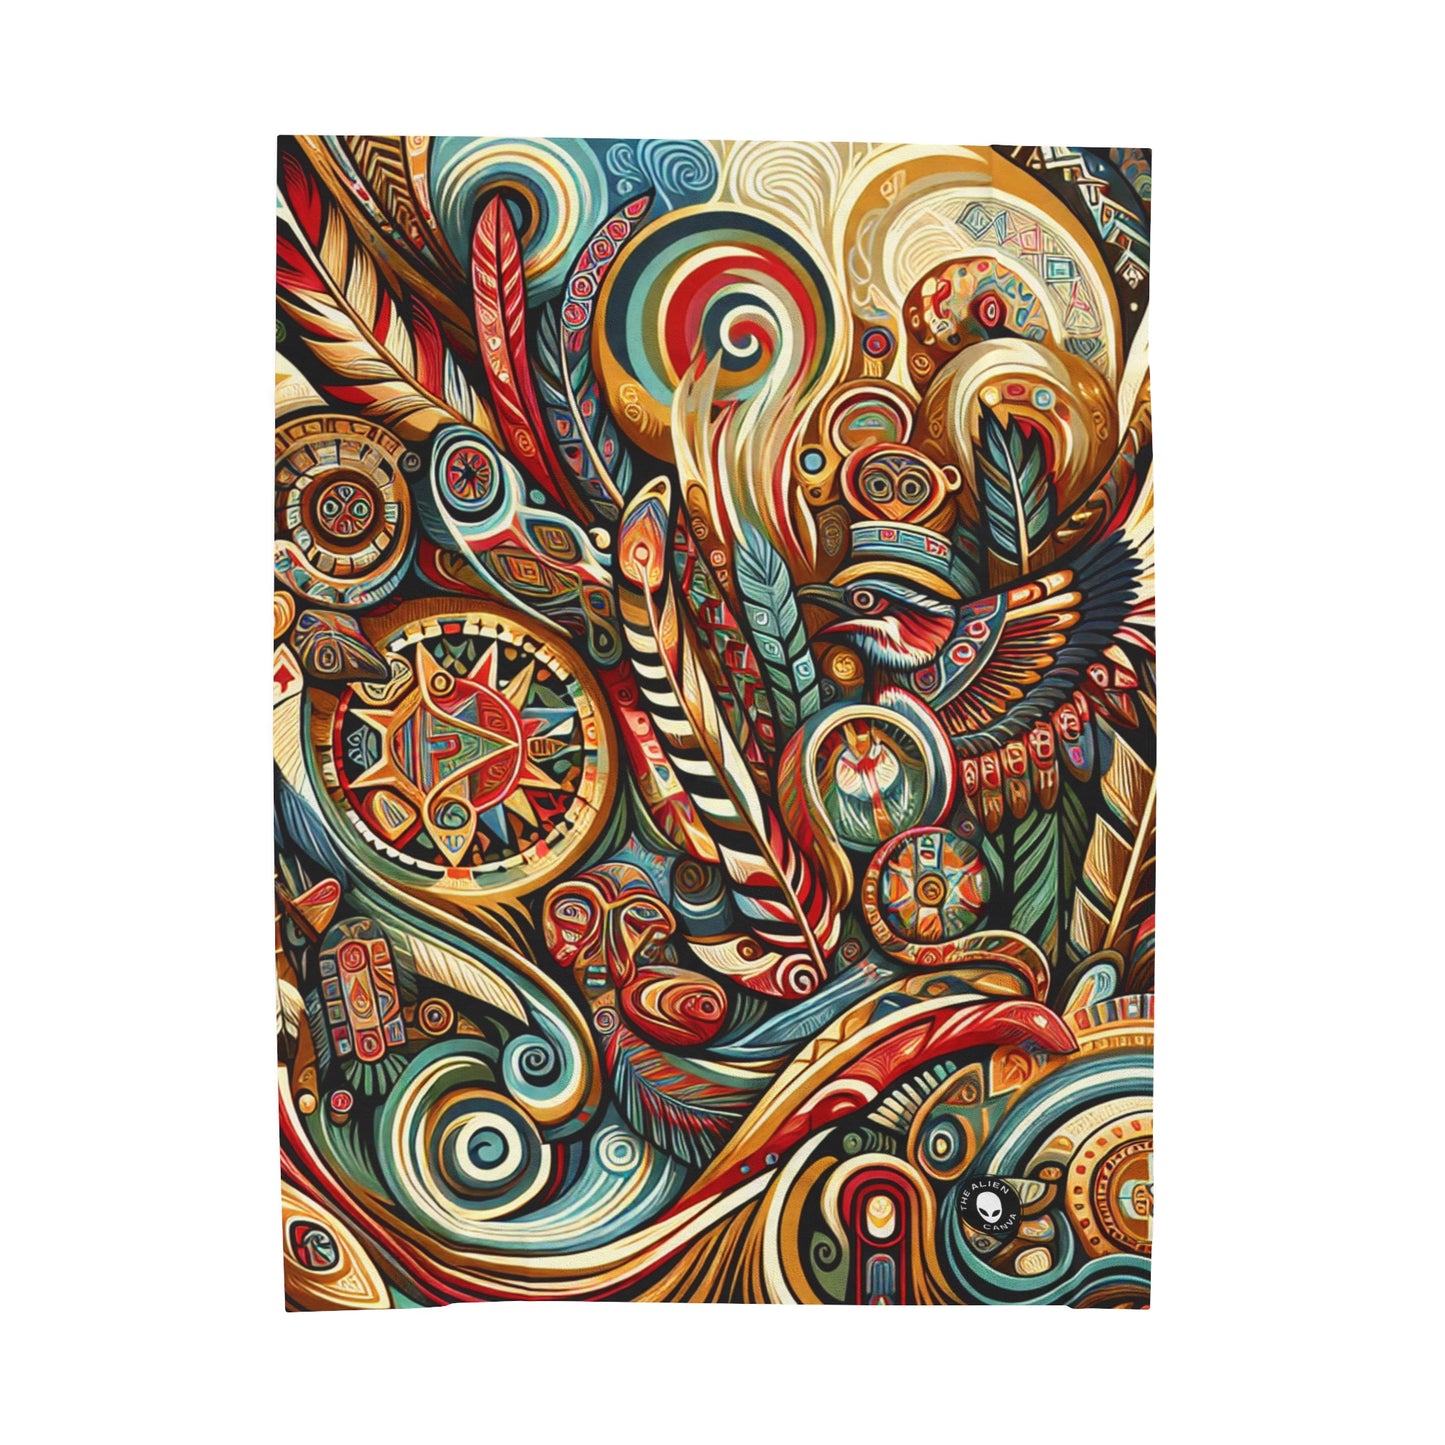 "Sacred Southwest: A Celebration of Indigenous Art" - La couverture en peluche Alien Velveteen Art autochtone